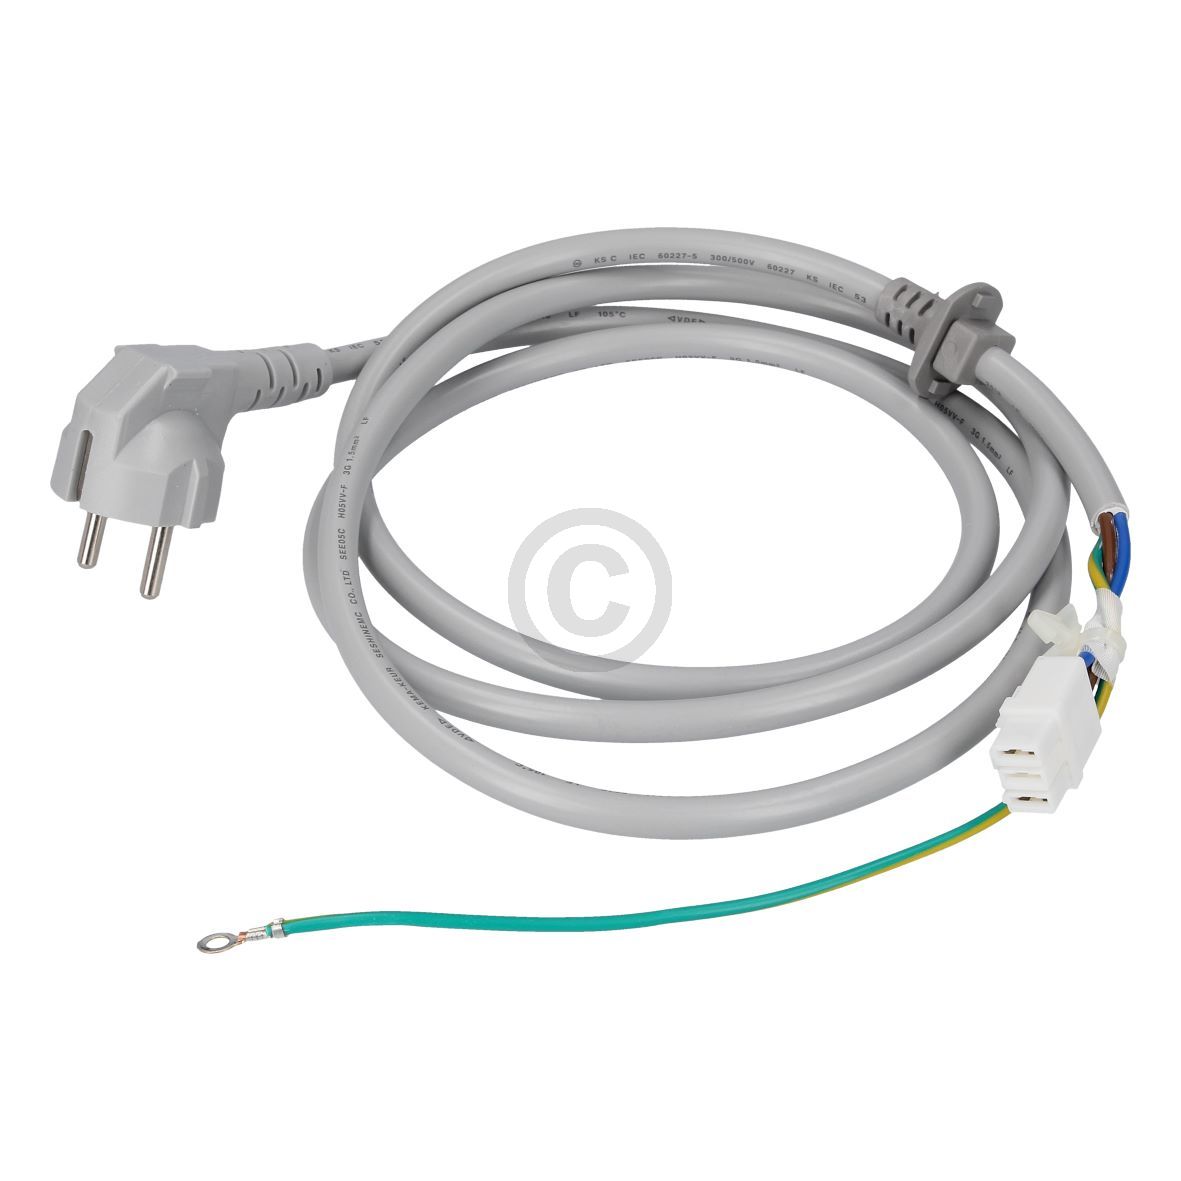 Netzkabel LG Electronics  für Trockner (KD-EAD40521411) unter Waschen und Trocknen/Trockner/Sonstiges/Kabel und Stecker